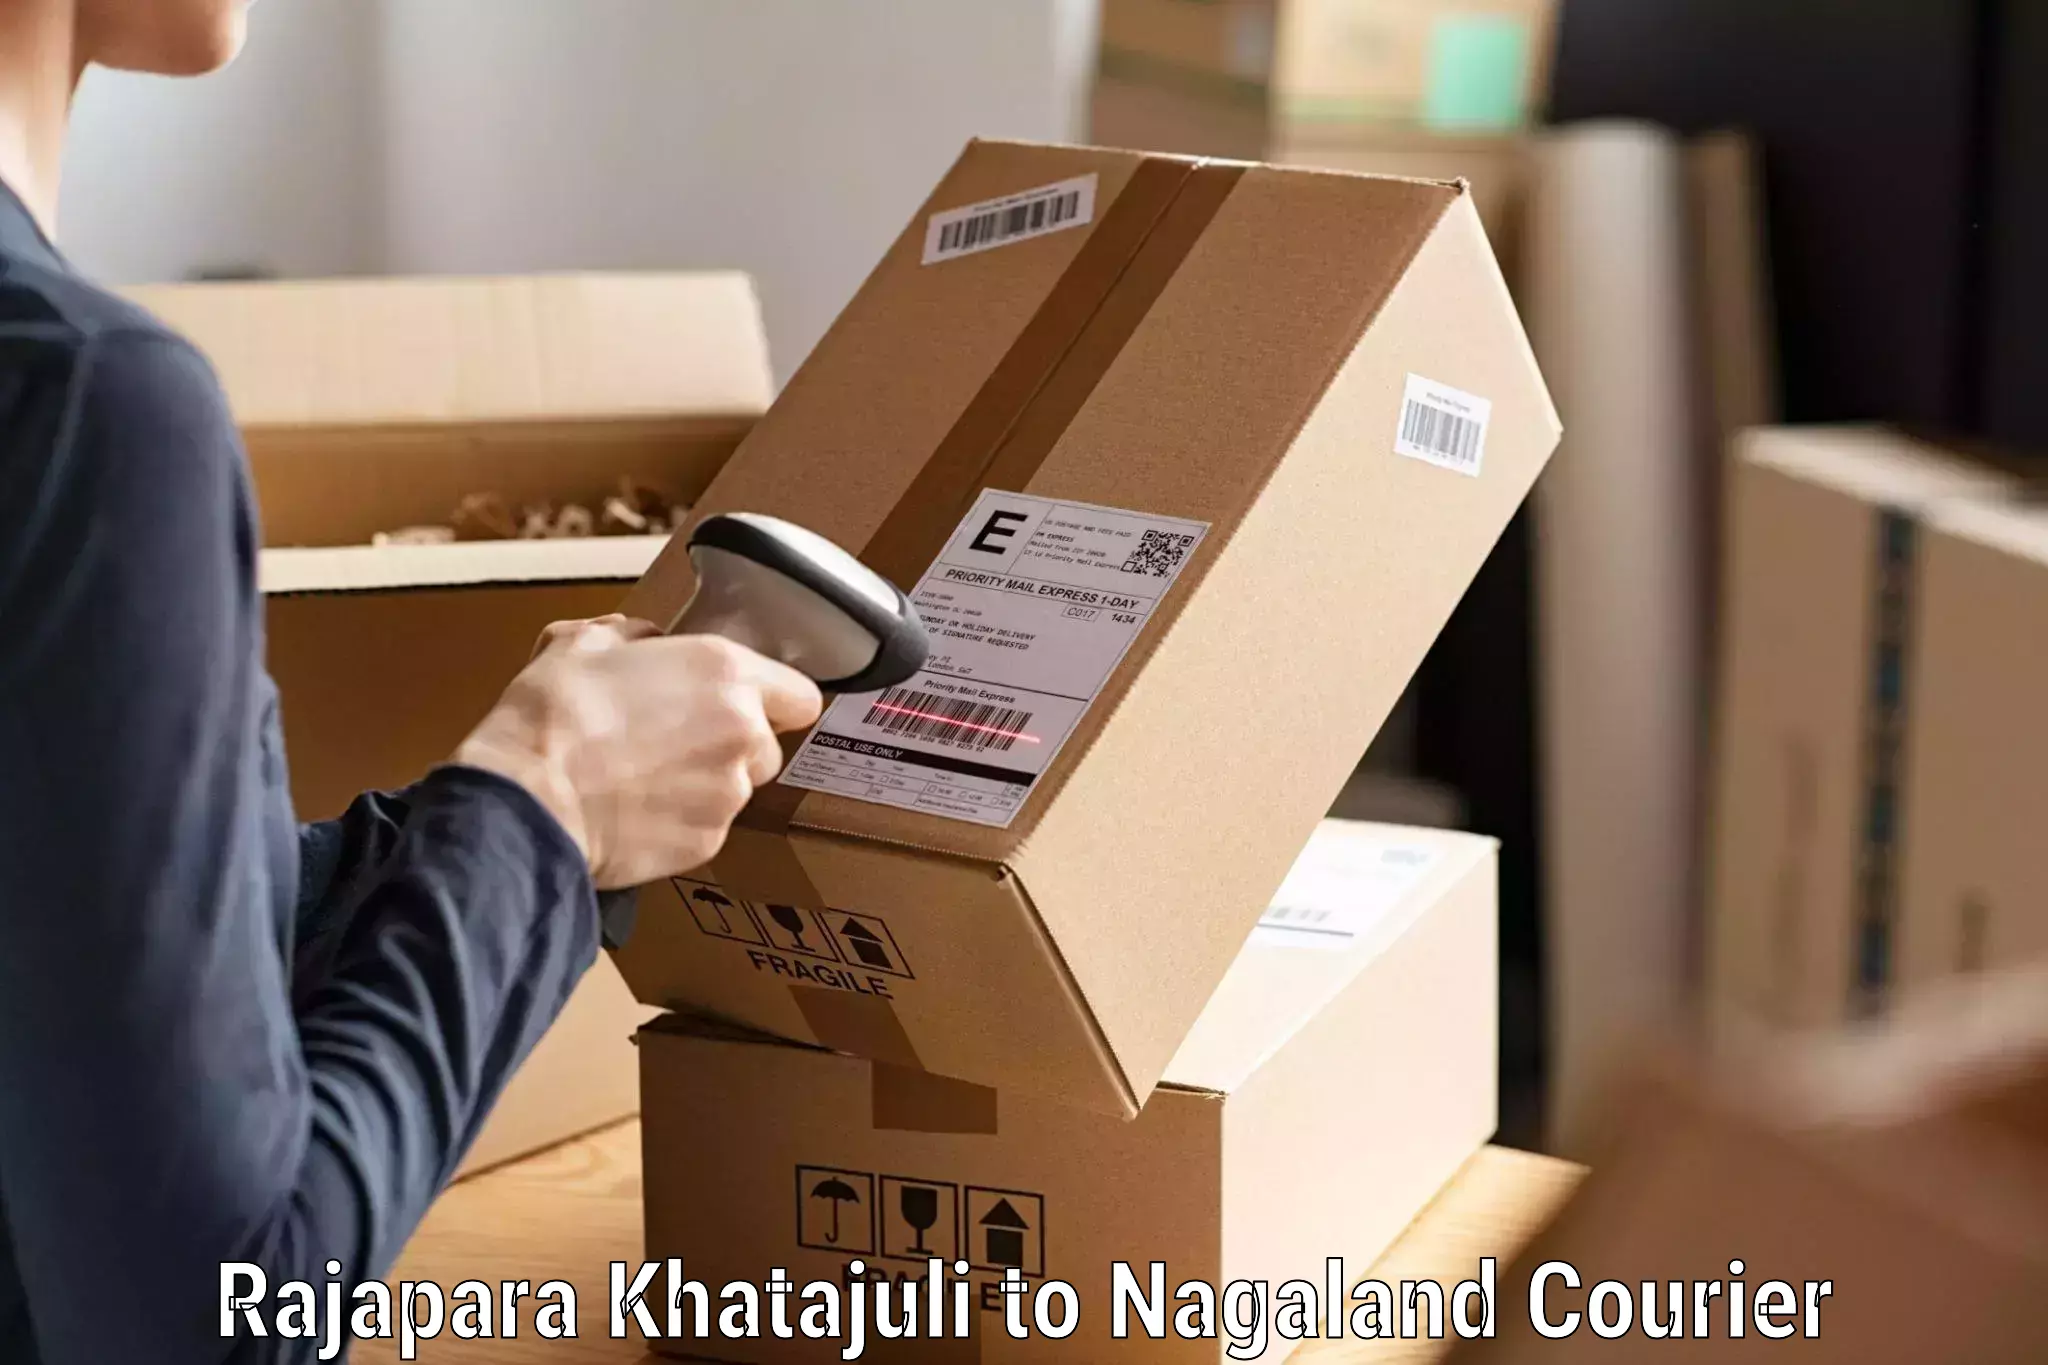 Optimized delivery routes Rajapara Khatajuli to Nagaland